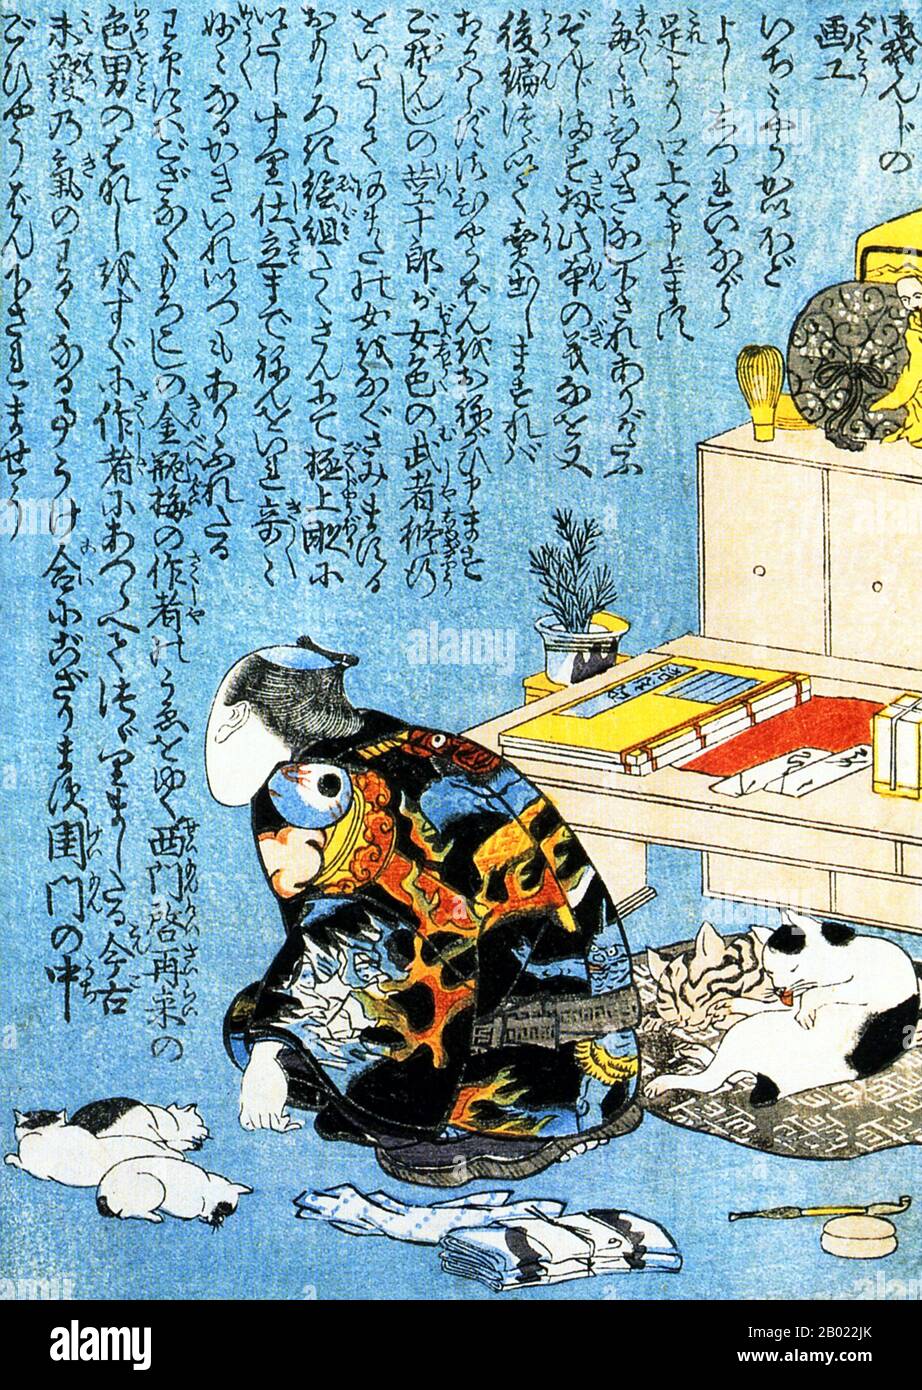 Utagawa Kuniyoshi (歌川 国芳, 1er janvier 1797 - 14 avril 1862) fut l'un des derniers grands maîtres du style japonais ukiyo-e de l'impression et de la peinture de blocs de bois. Il est associé à l'école Utagawa. La gamme des sujets préférés de Kuniyoshi comprenait de nombreux genres : paysages, belles femmes, acteurs Kabuki, chats et animaux mythiques. Il est connu pour les représentations des batailles de samouraï et des héros légendaires. Ses œuvres d'art ont été affectées par les influences occidentales dans la peinture et la caricature des paysages. Banque D'Images